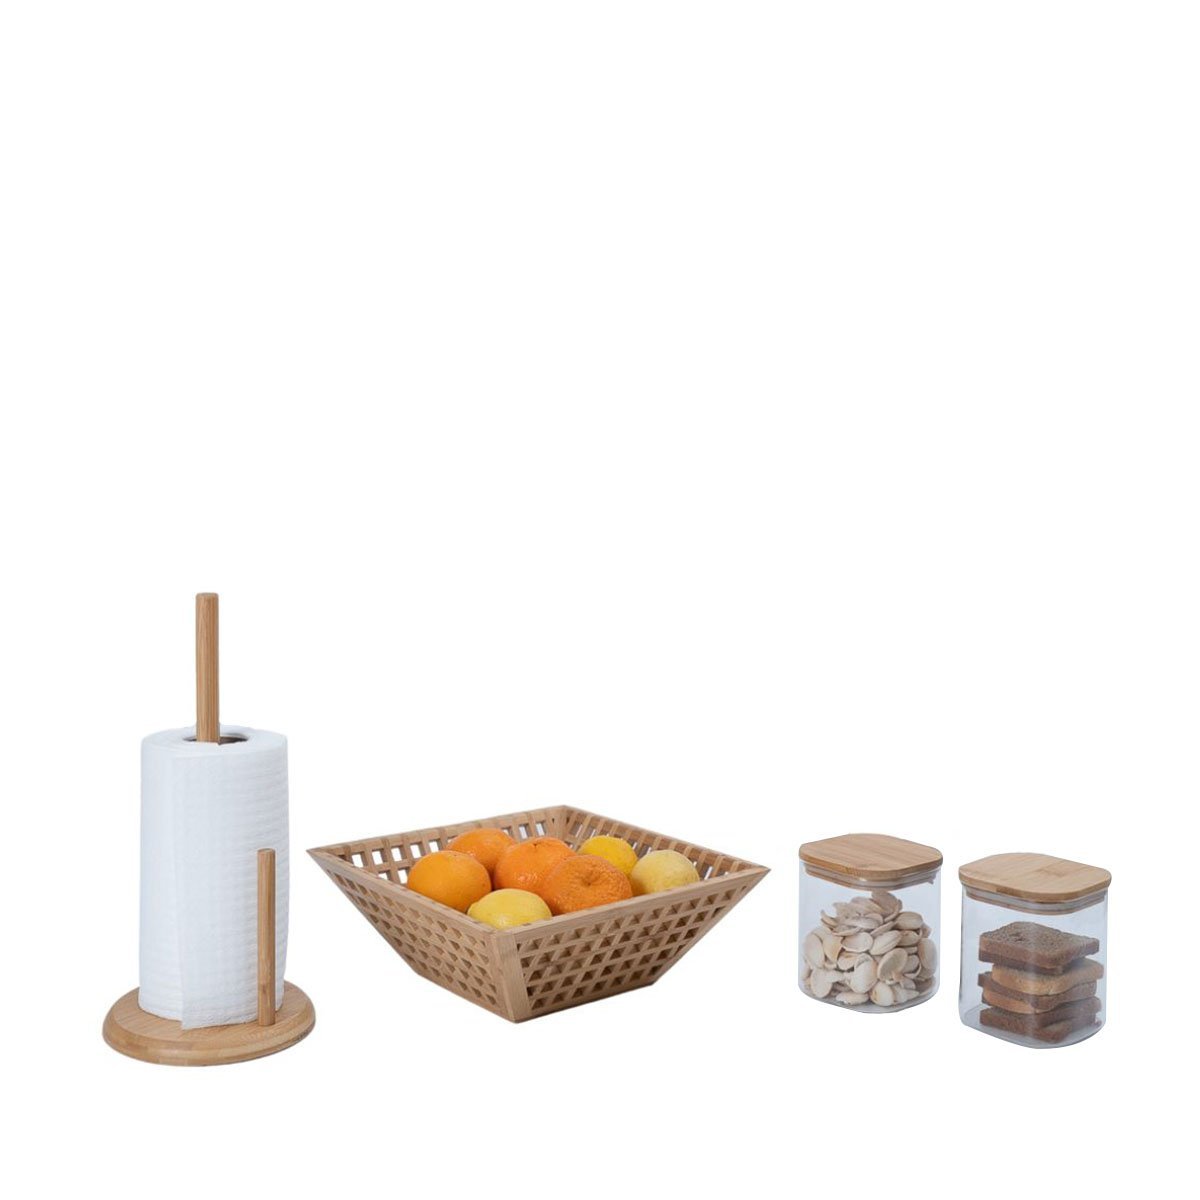 Kit com 2 potes de vidro com tampa de bambu 800ml, fruteira vazada de bambu e porta papel toalha de - 7